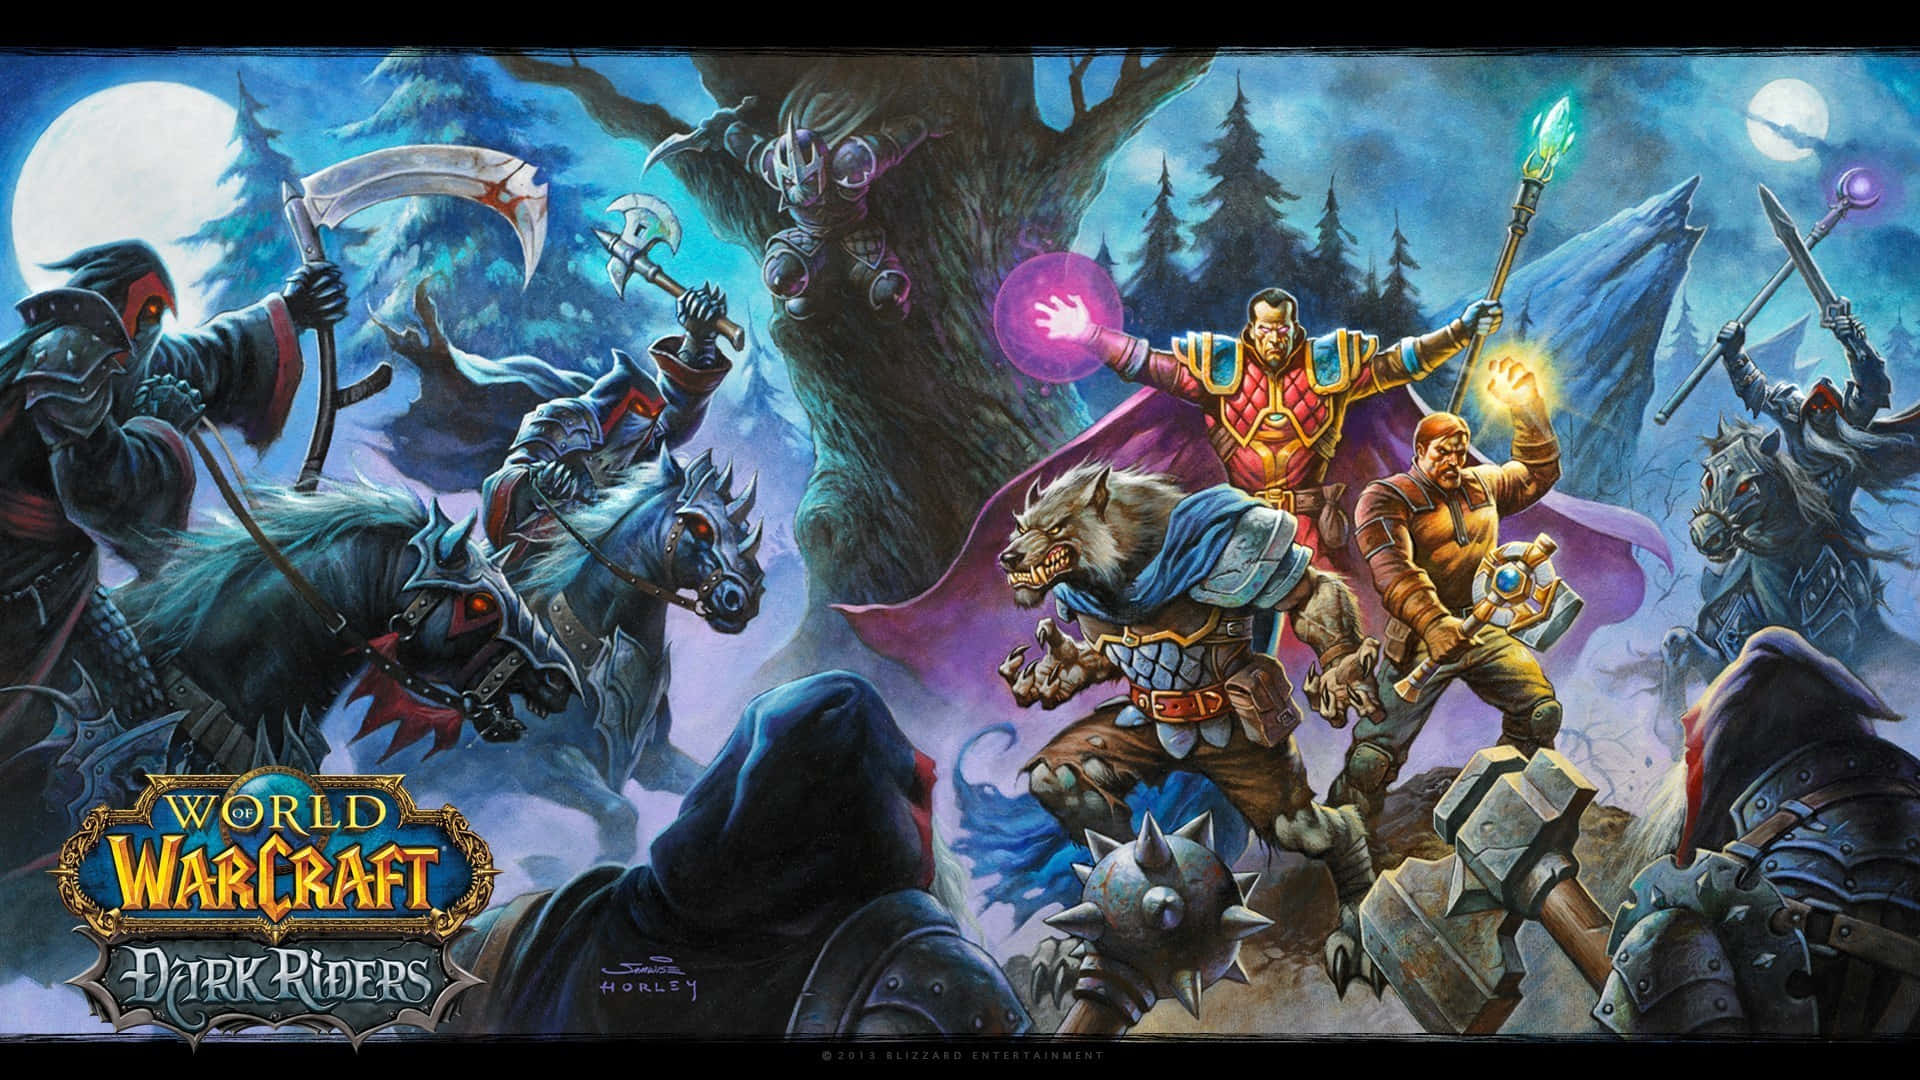 Einkrieger Von World Of Warcraft Bereitet Sich Auf Eine Epische Schlacht Vor. Wallpaper